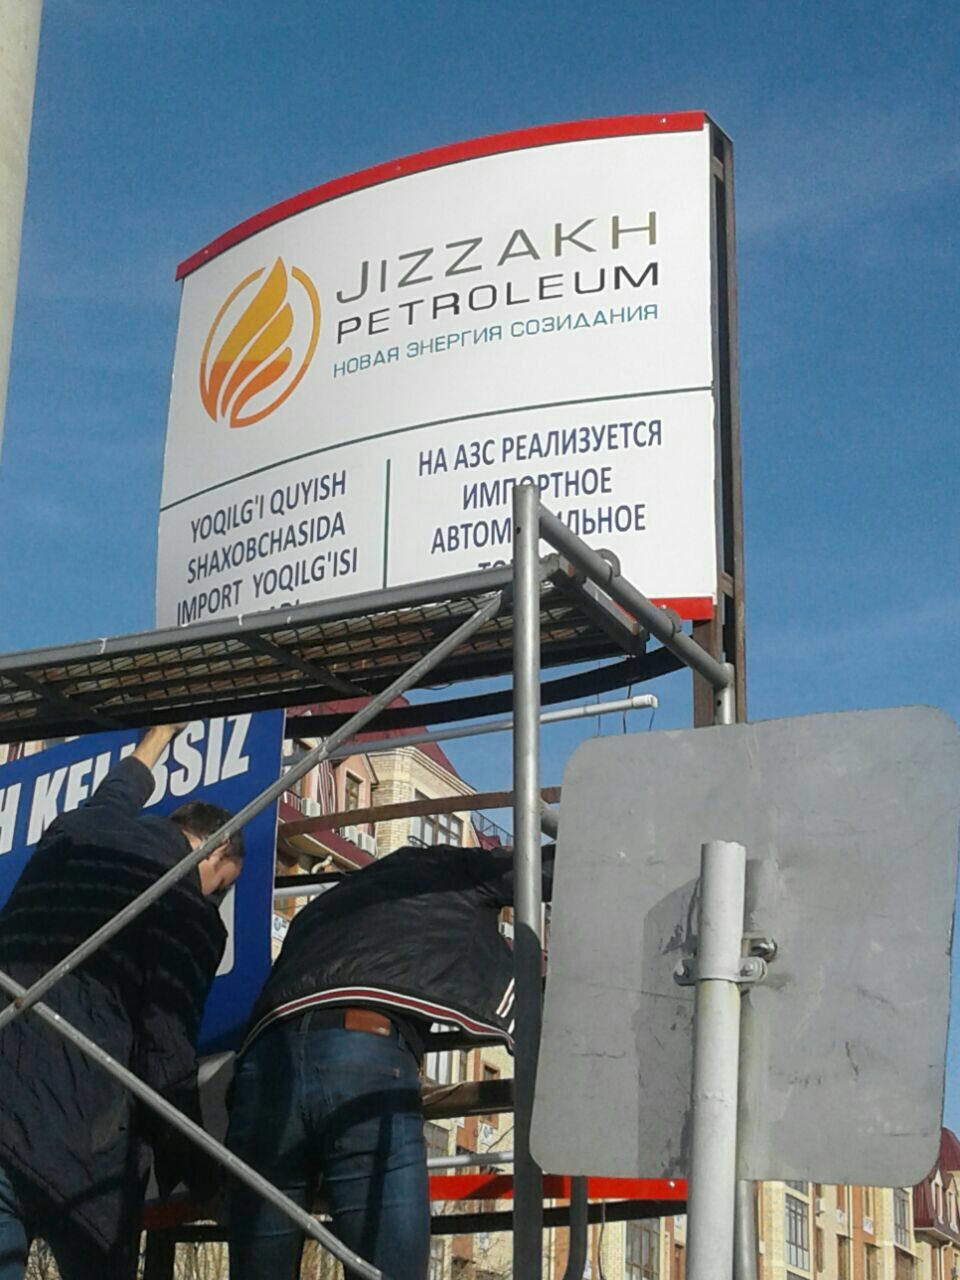 Jizzakh Petroleum будет продавать иностранный бензин